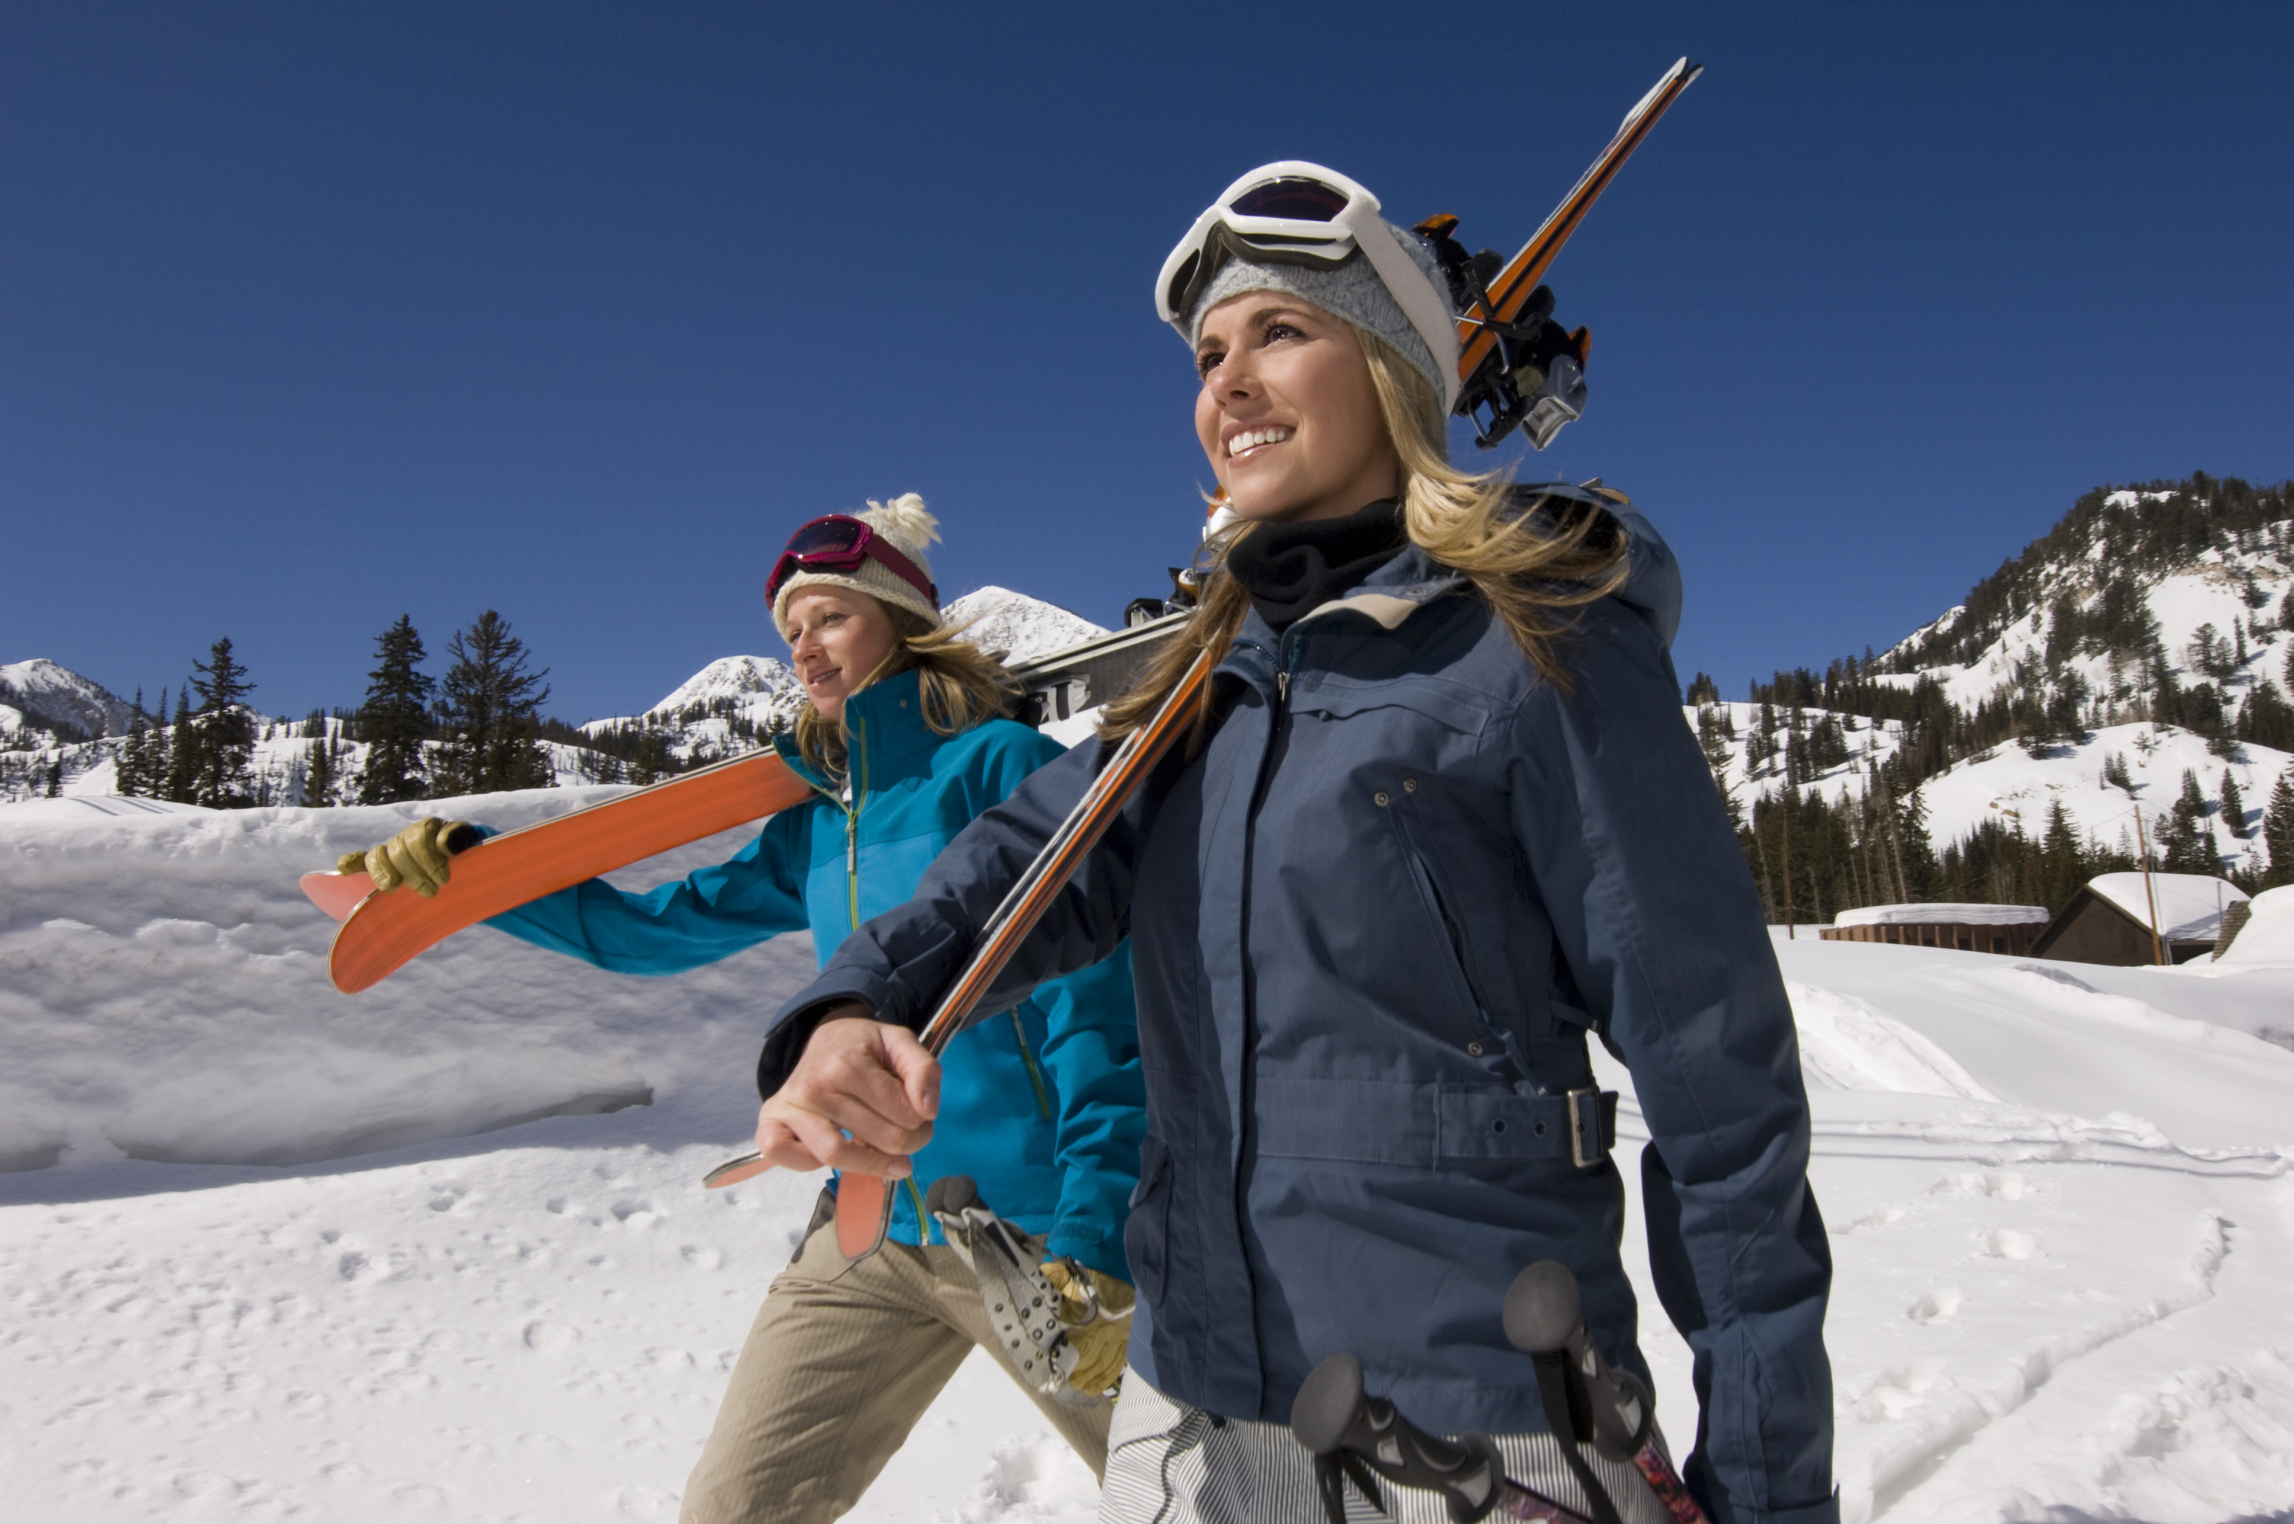 The good ski. Девушка на лыжах. Фотосессия на горнолыжном курорте. Девушка на горнолыжном курорте. Счастливые люди на горнолыжных склонах.